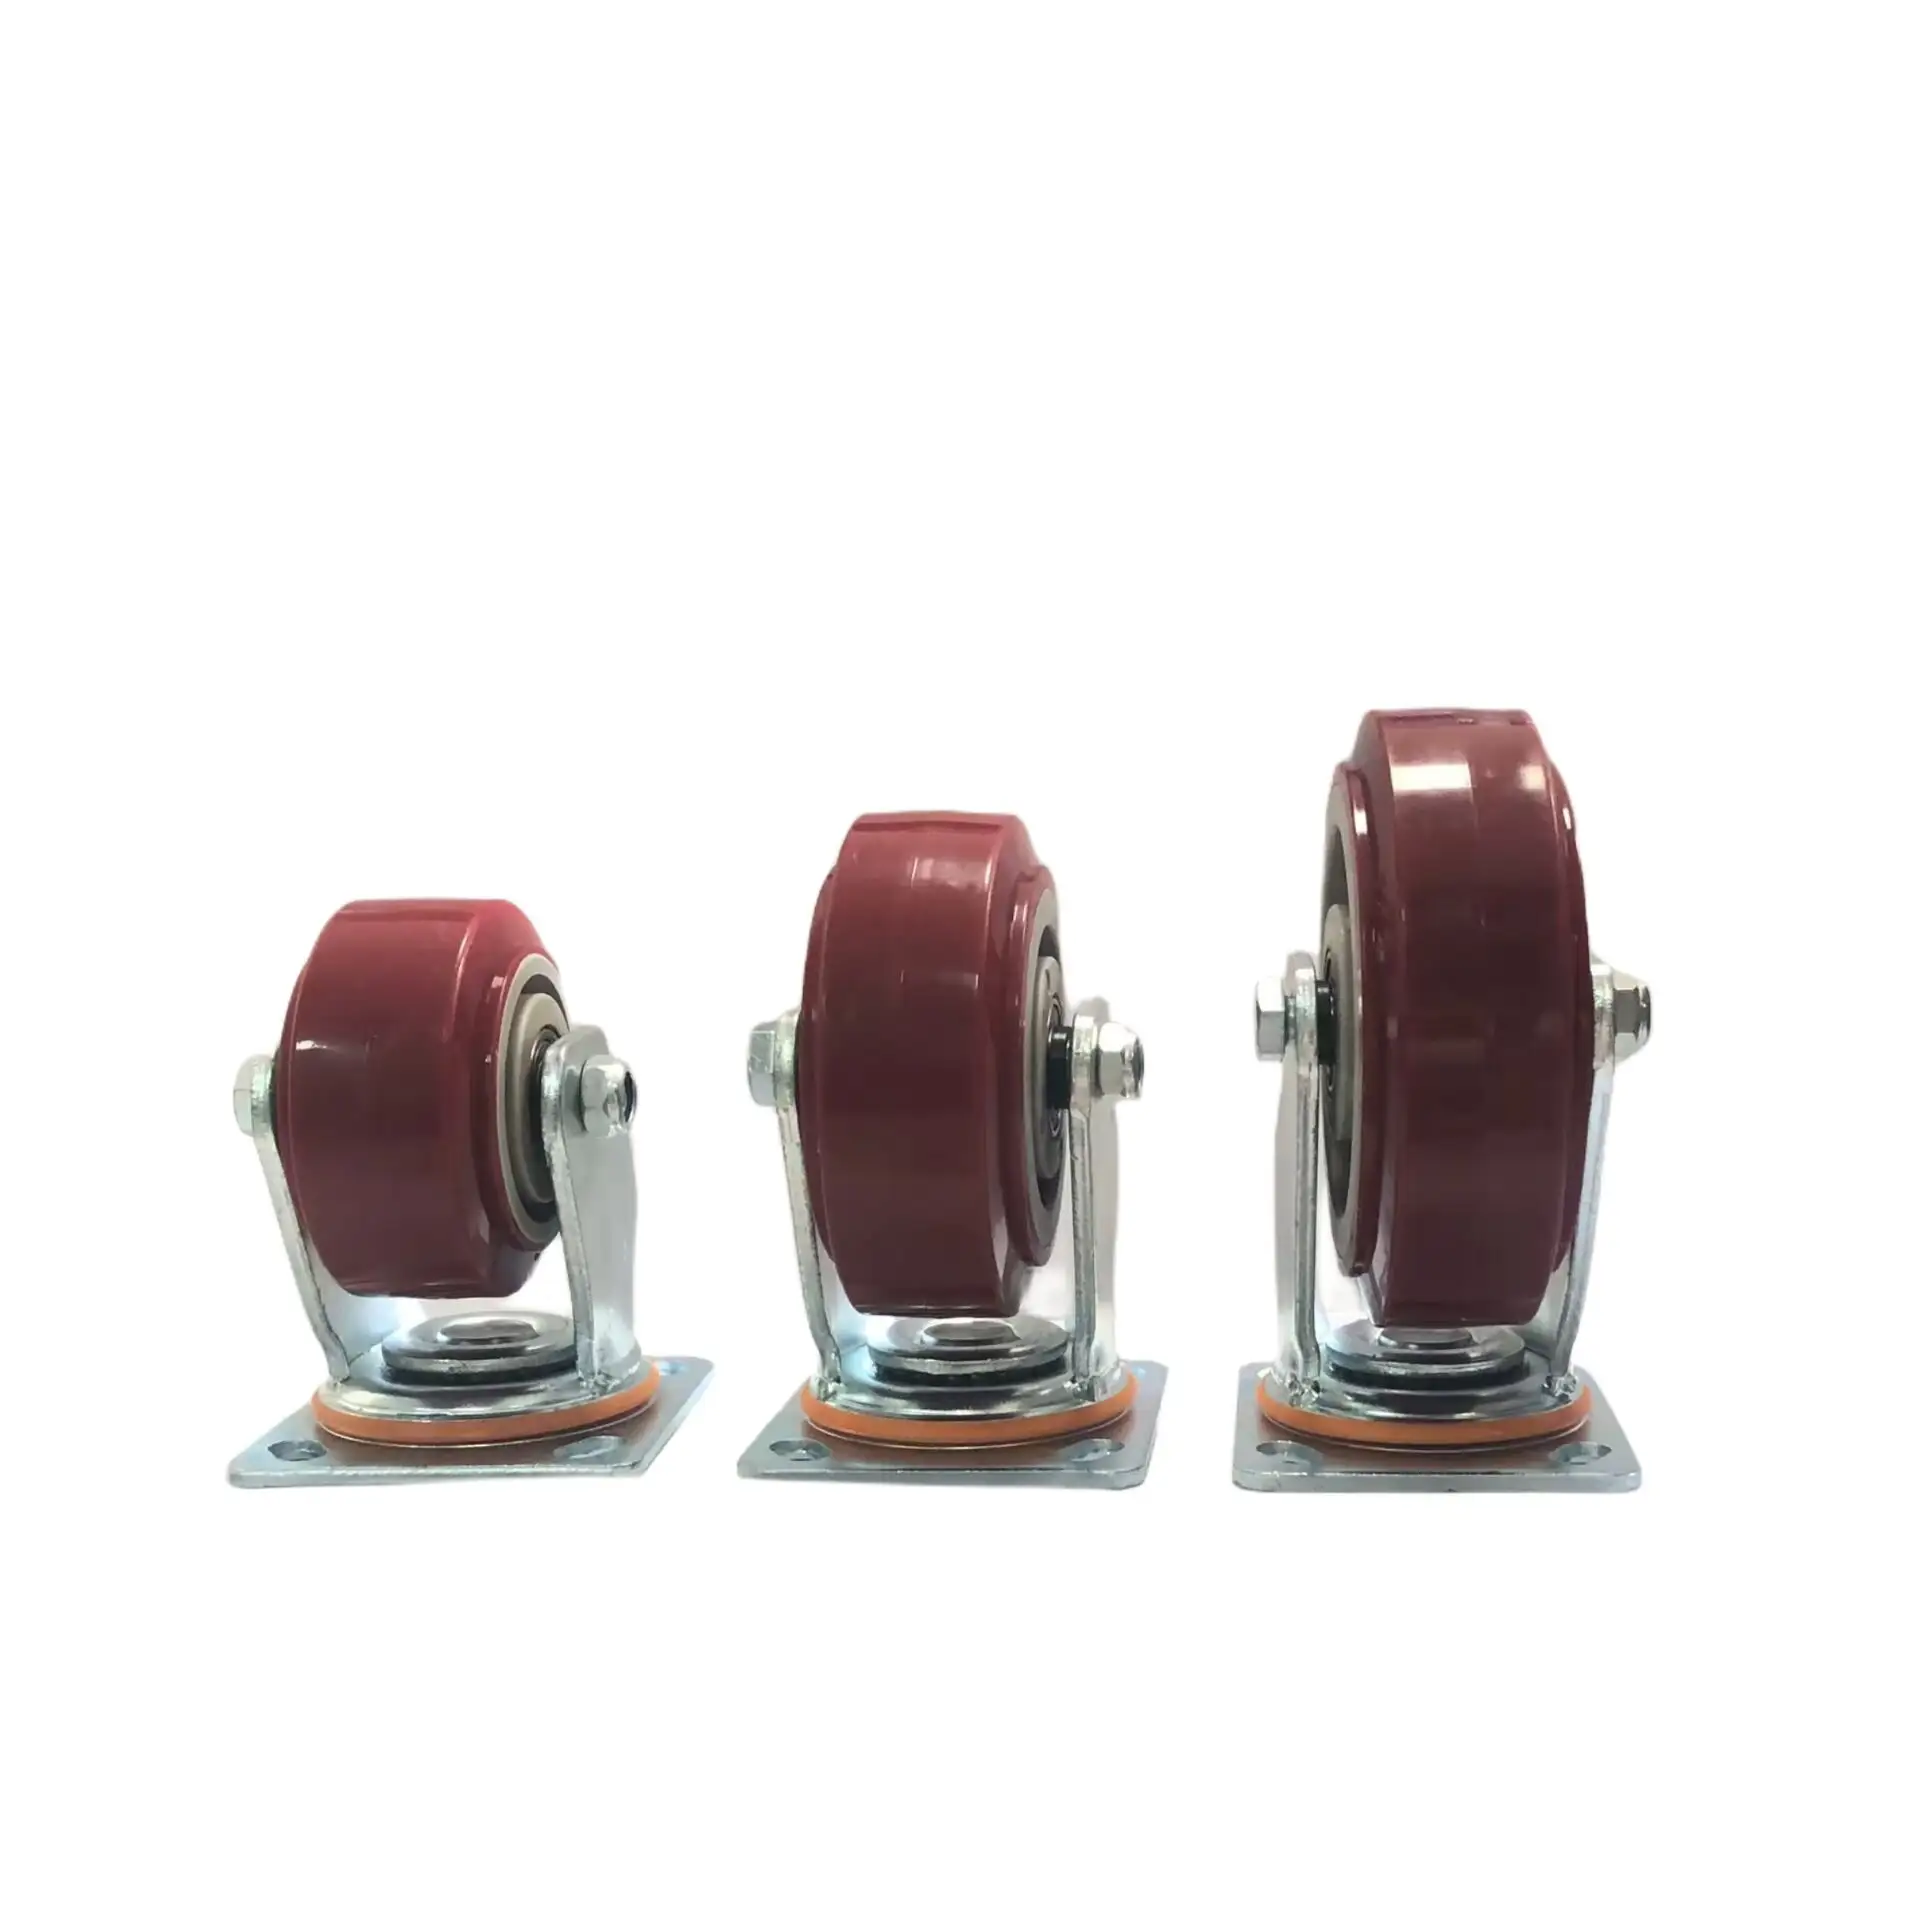 Red Big Castor Swivel Wheel for Industrial Heavy Duty Casters